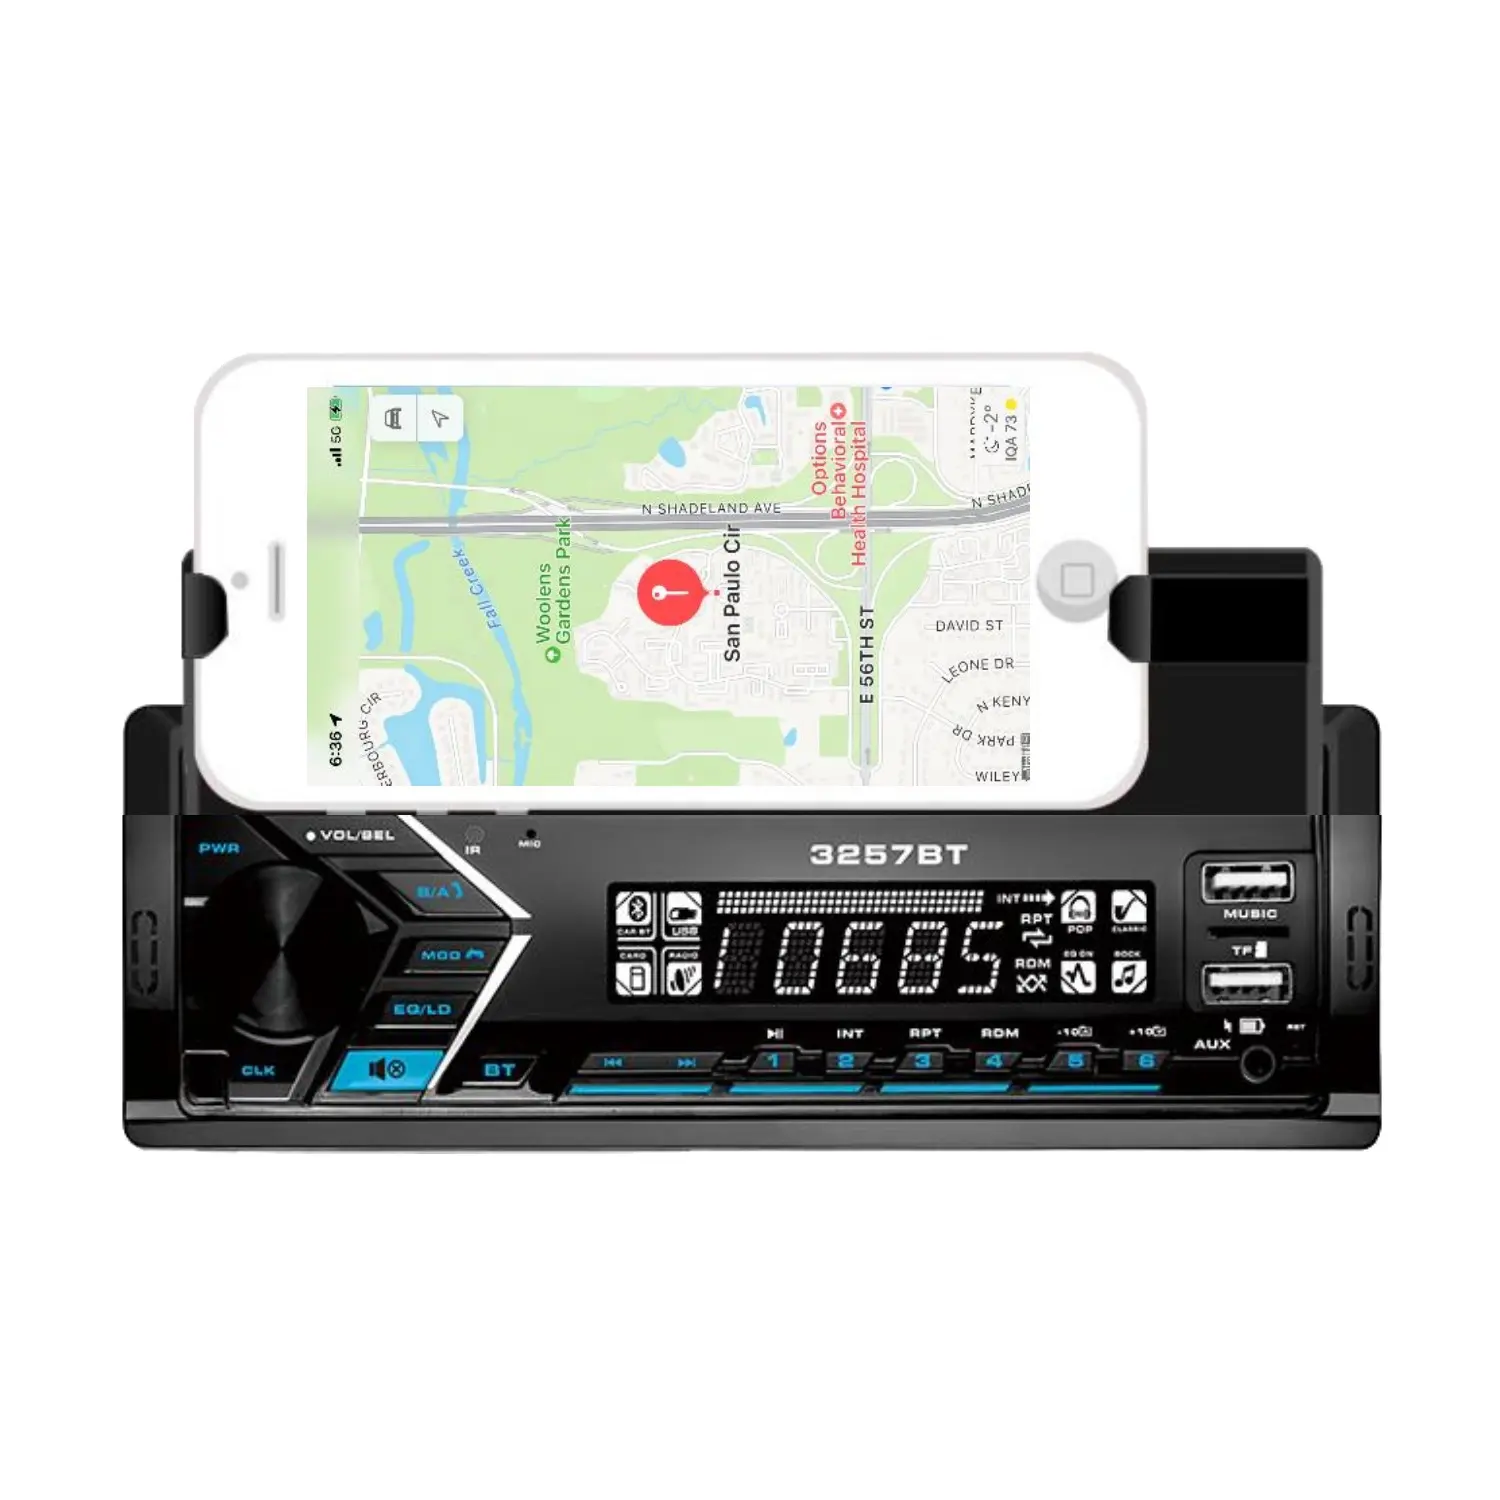 Yeni geldi pioneer tasarım BT araba ses mp3 usb oynatıcı ile mobil telefon braketi